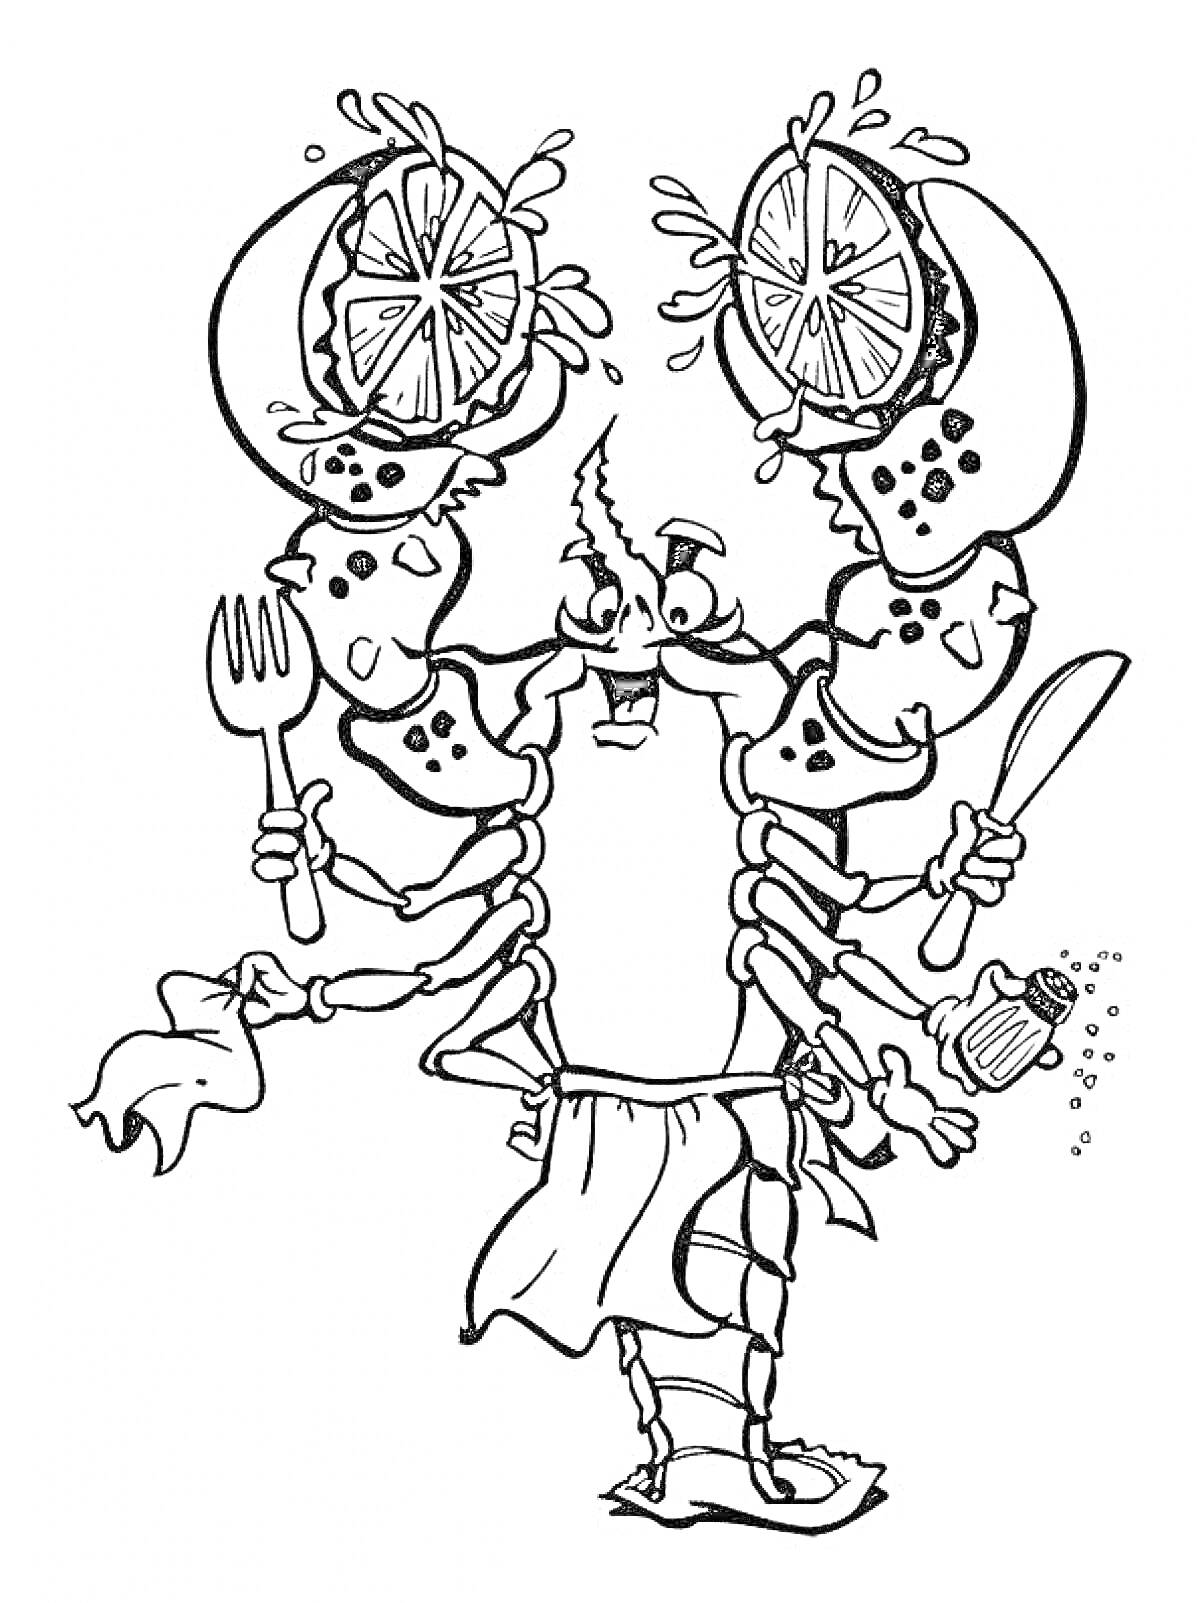 Раскраска Рак с лимонами на клешнях, держащий вилку, нож, перцемолку и полотенце